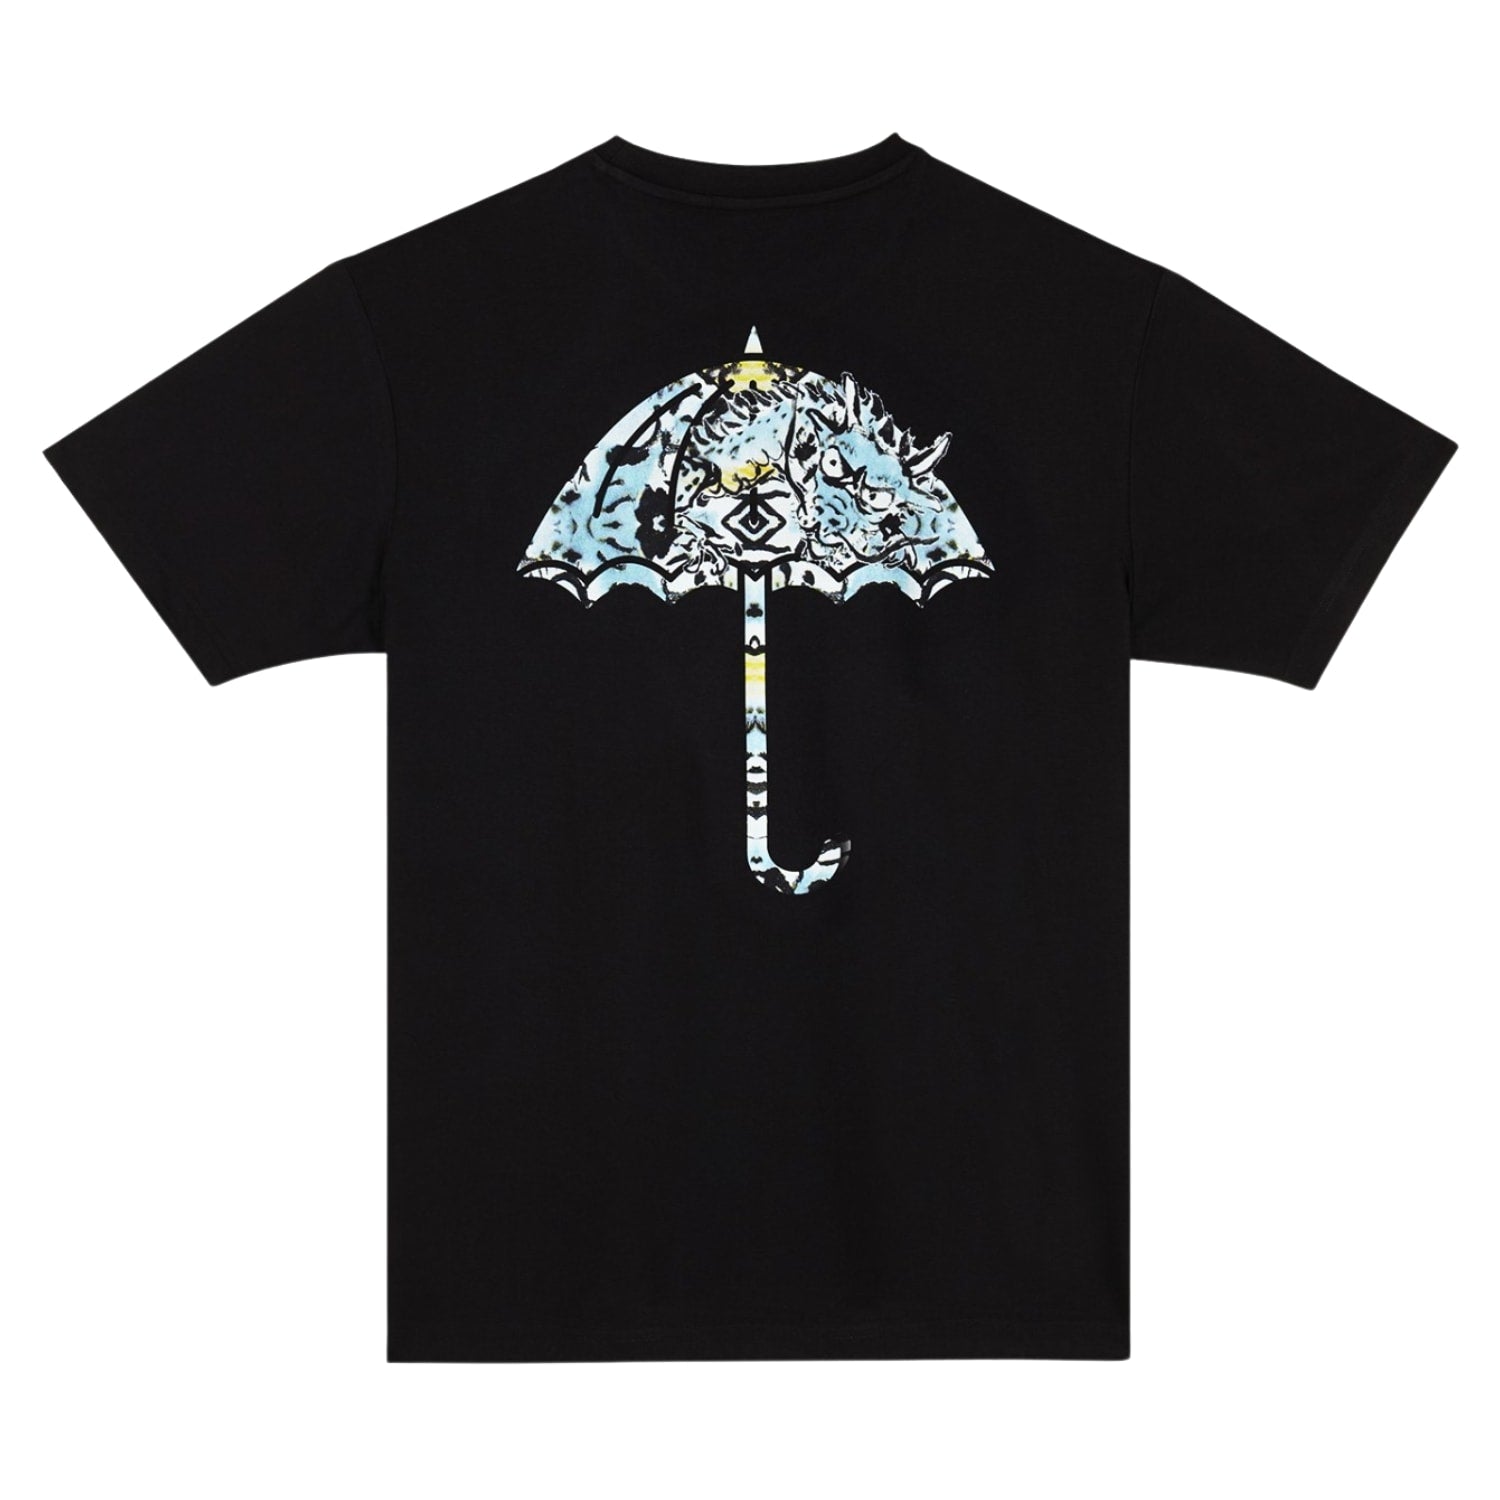 Helas Dragon T-Shirt - Black - Mens Graphic T-Shirt by Helas